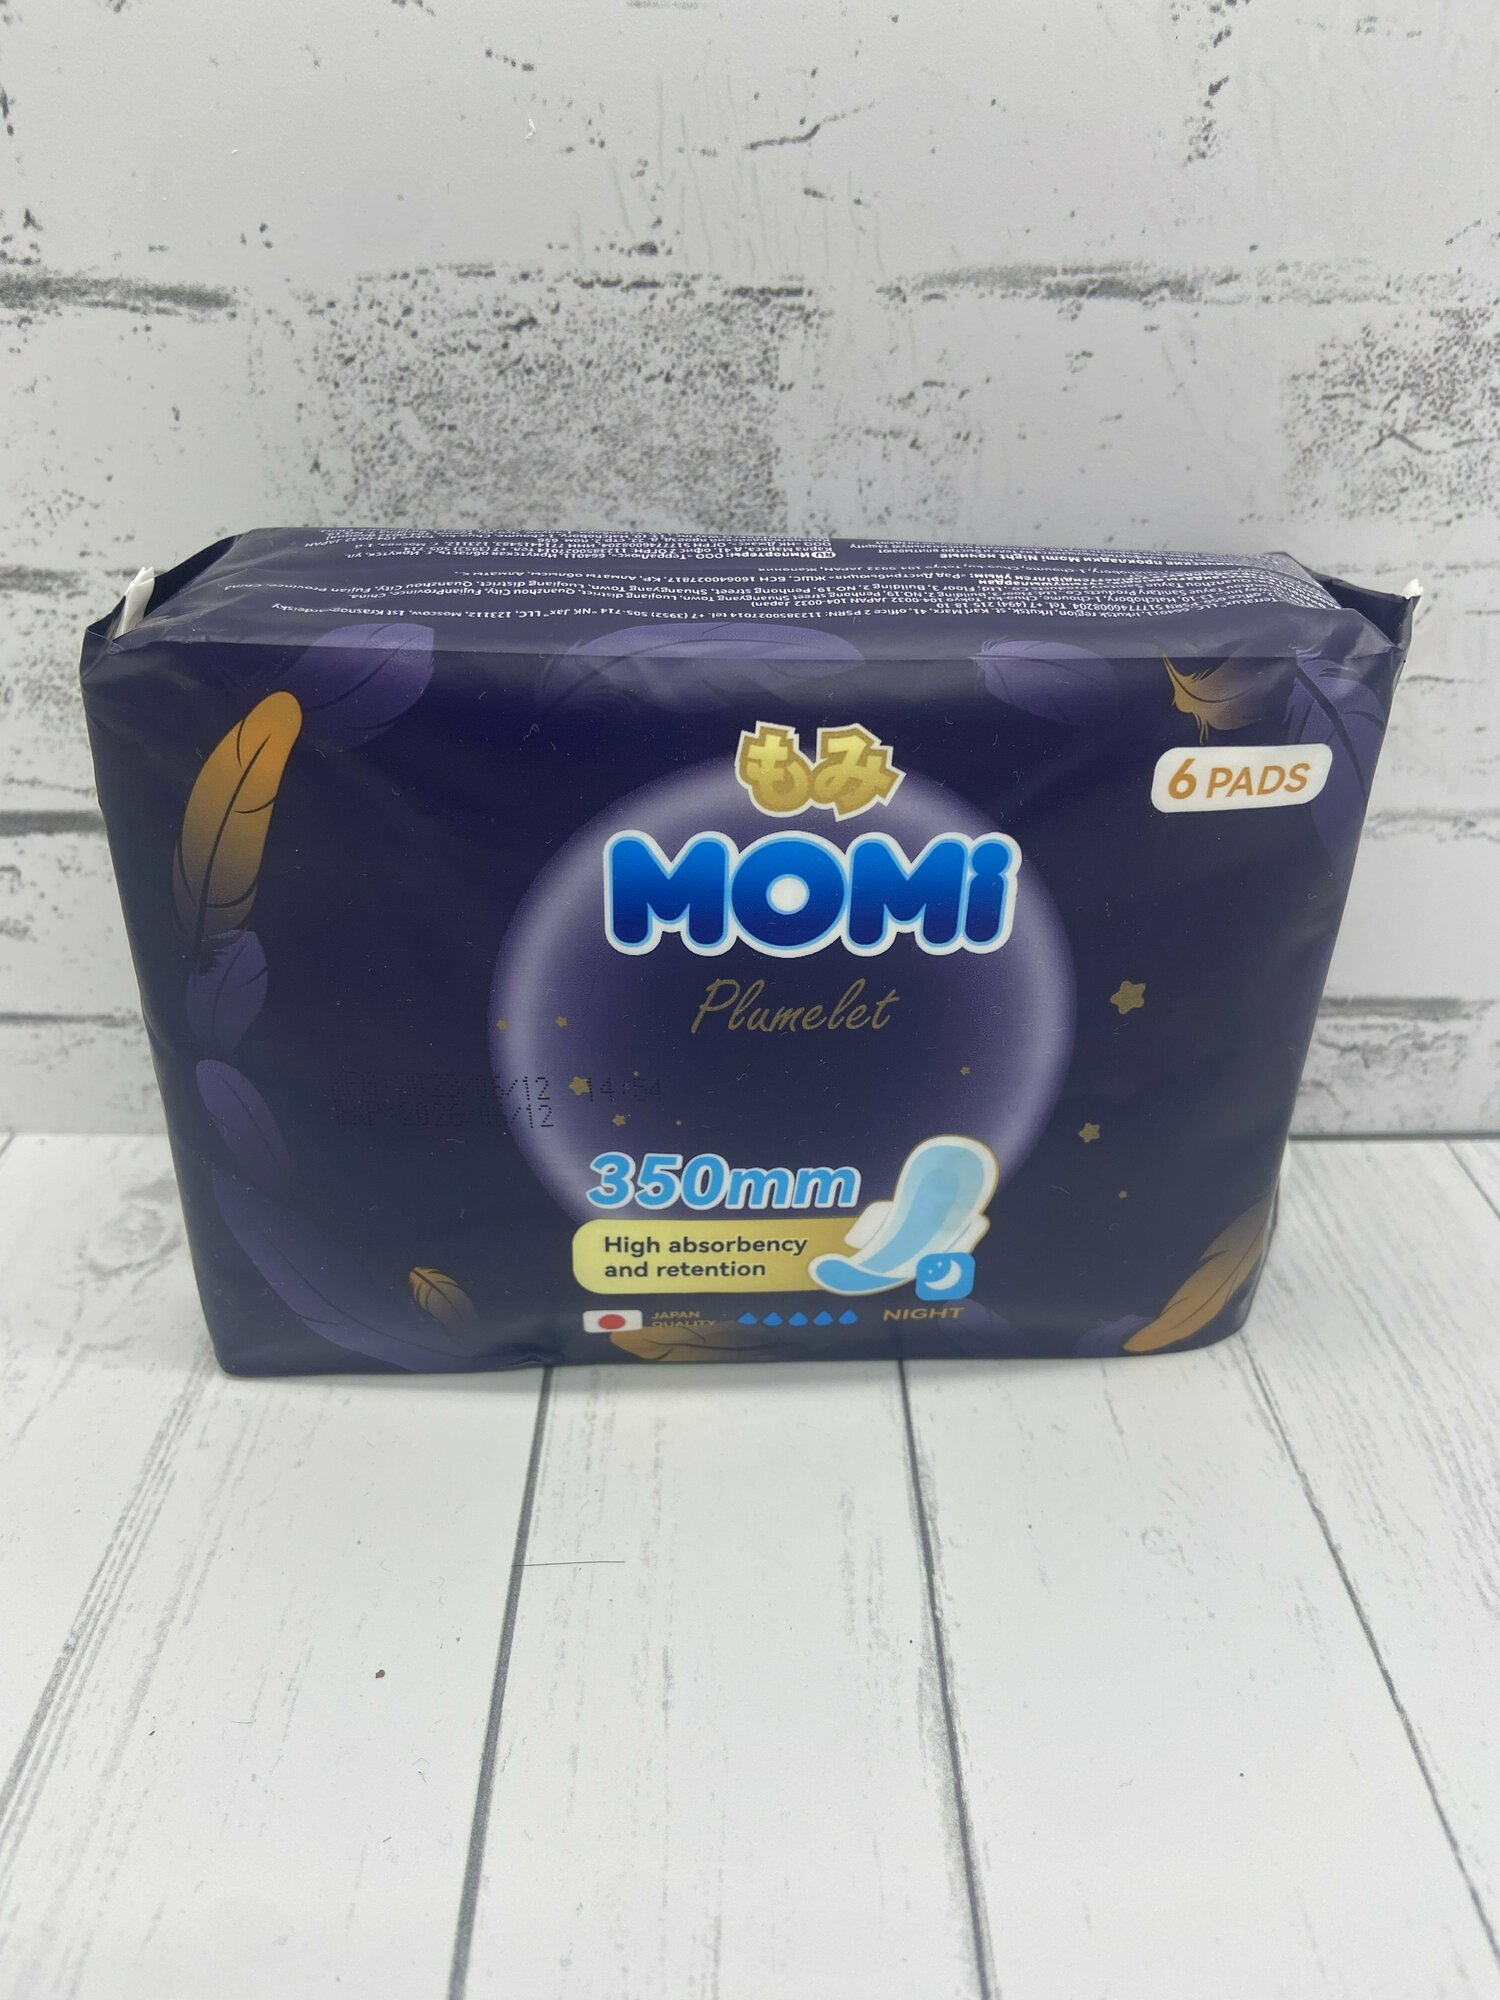 Momi Plumelet Night Гигиенические прокладки ночные 350 мм 6 шт 5 капель